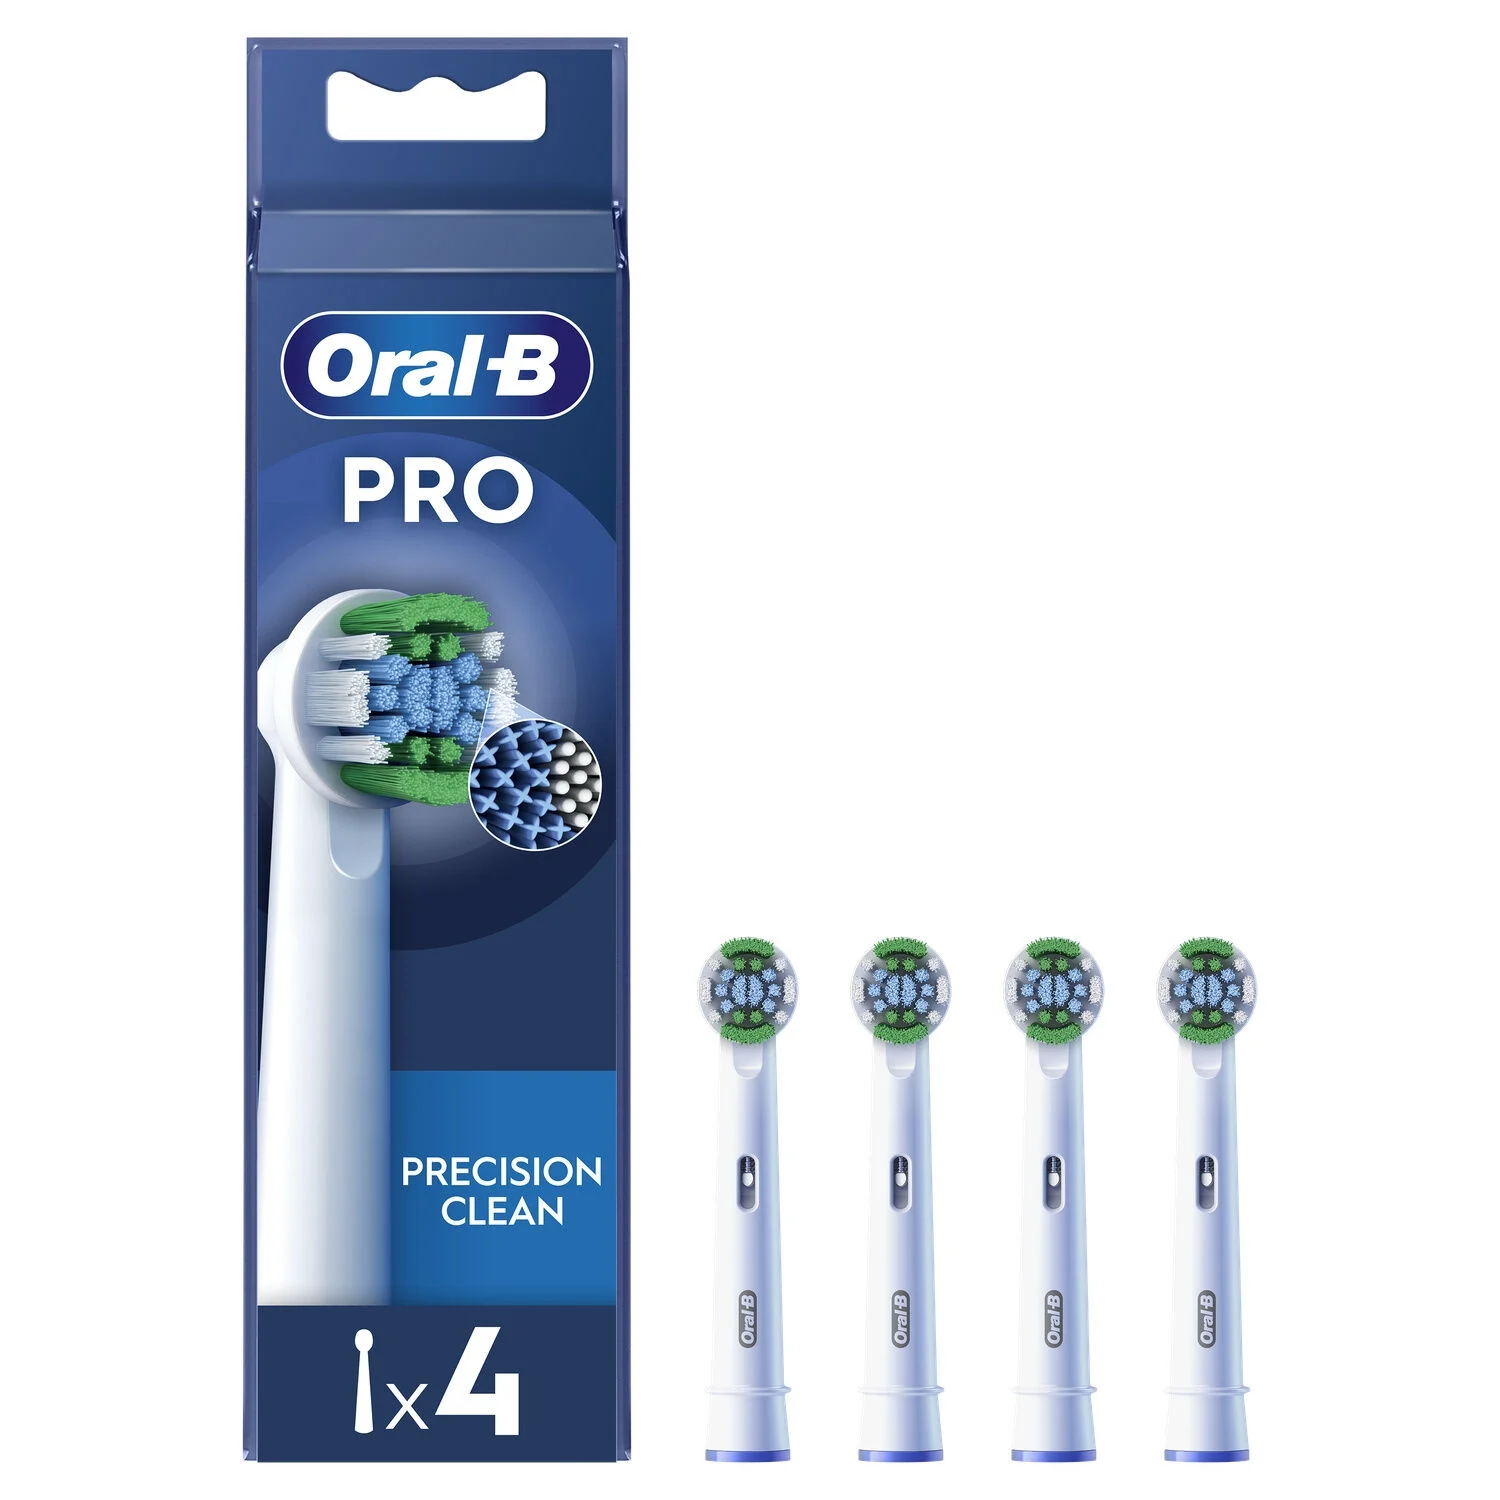 Brossette Precision Clean Avec Technologie Cleanmaximiser - Oral-b